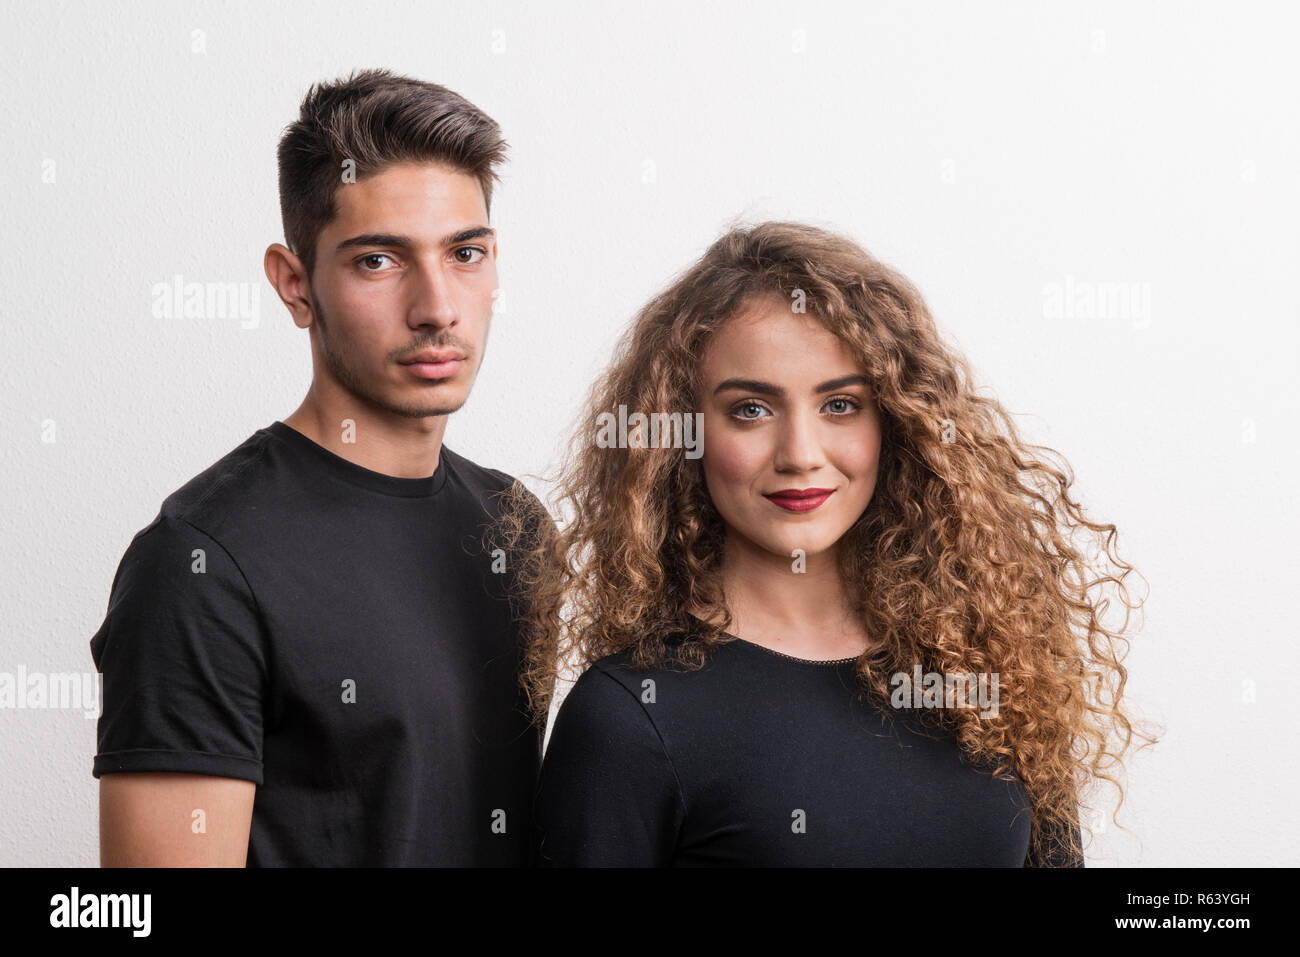 Porträt eines jungen Paares in einem Studio, das Tragen von schwarzer Kleidung. Stockfoto